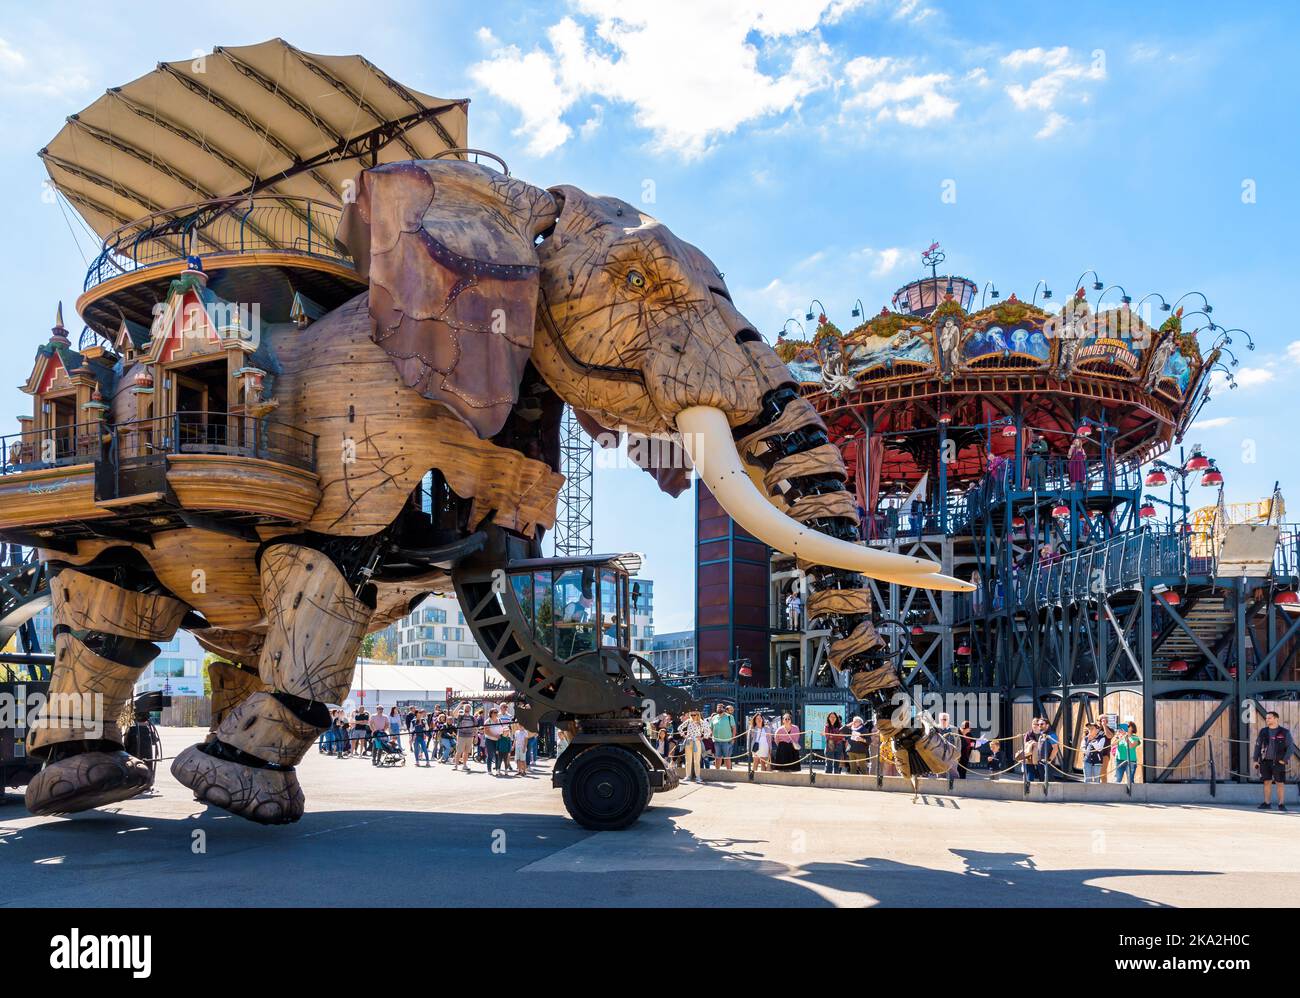 Die riesige Elefantenpuppe, die zu den Maschinen der Touristenattraktion der Insel Nantes gehört, vor dem Karussell der Meereswelten. Stockfoto